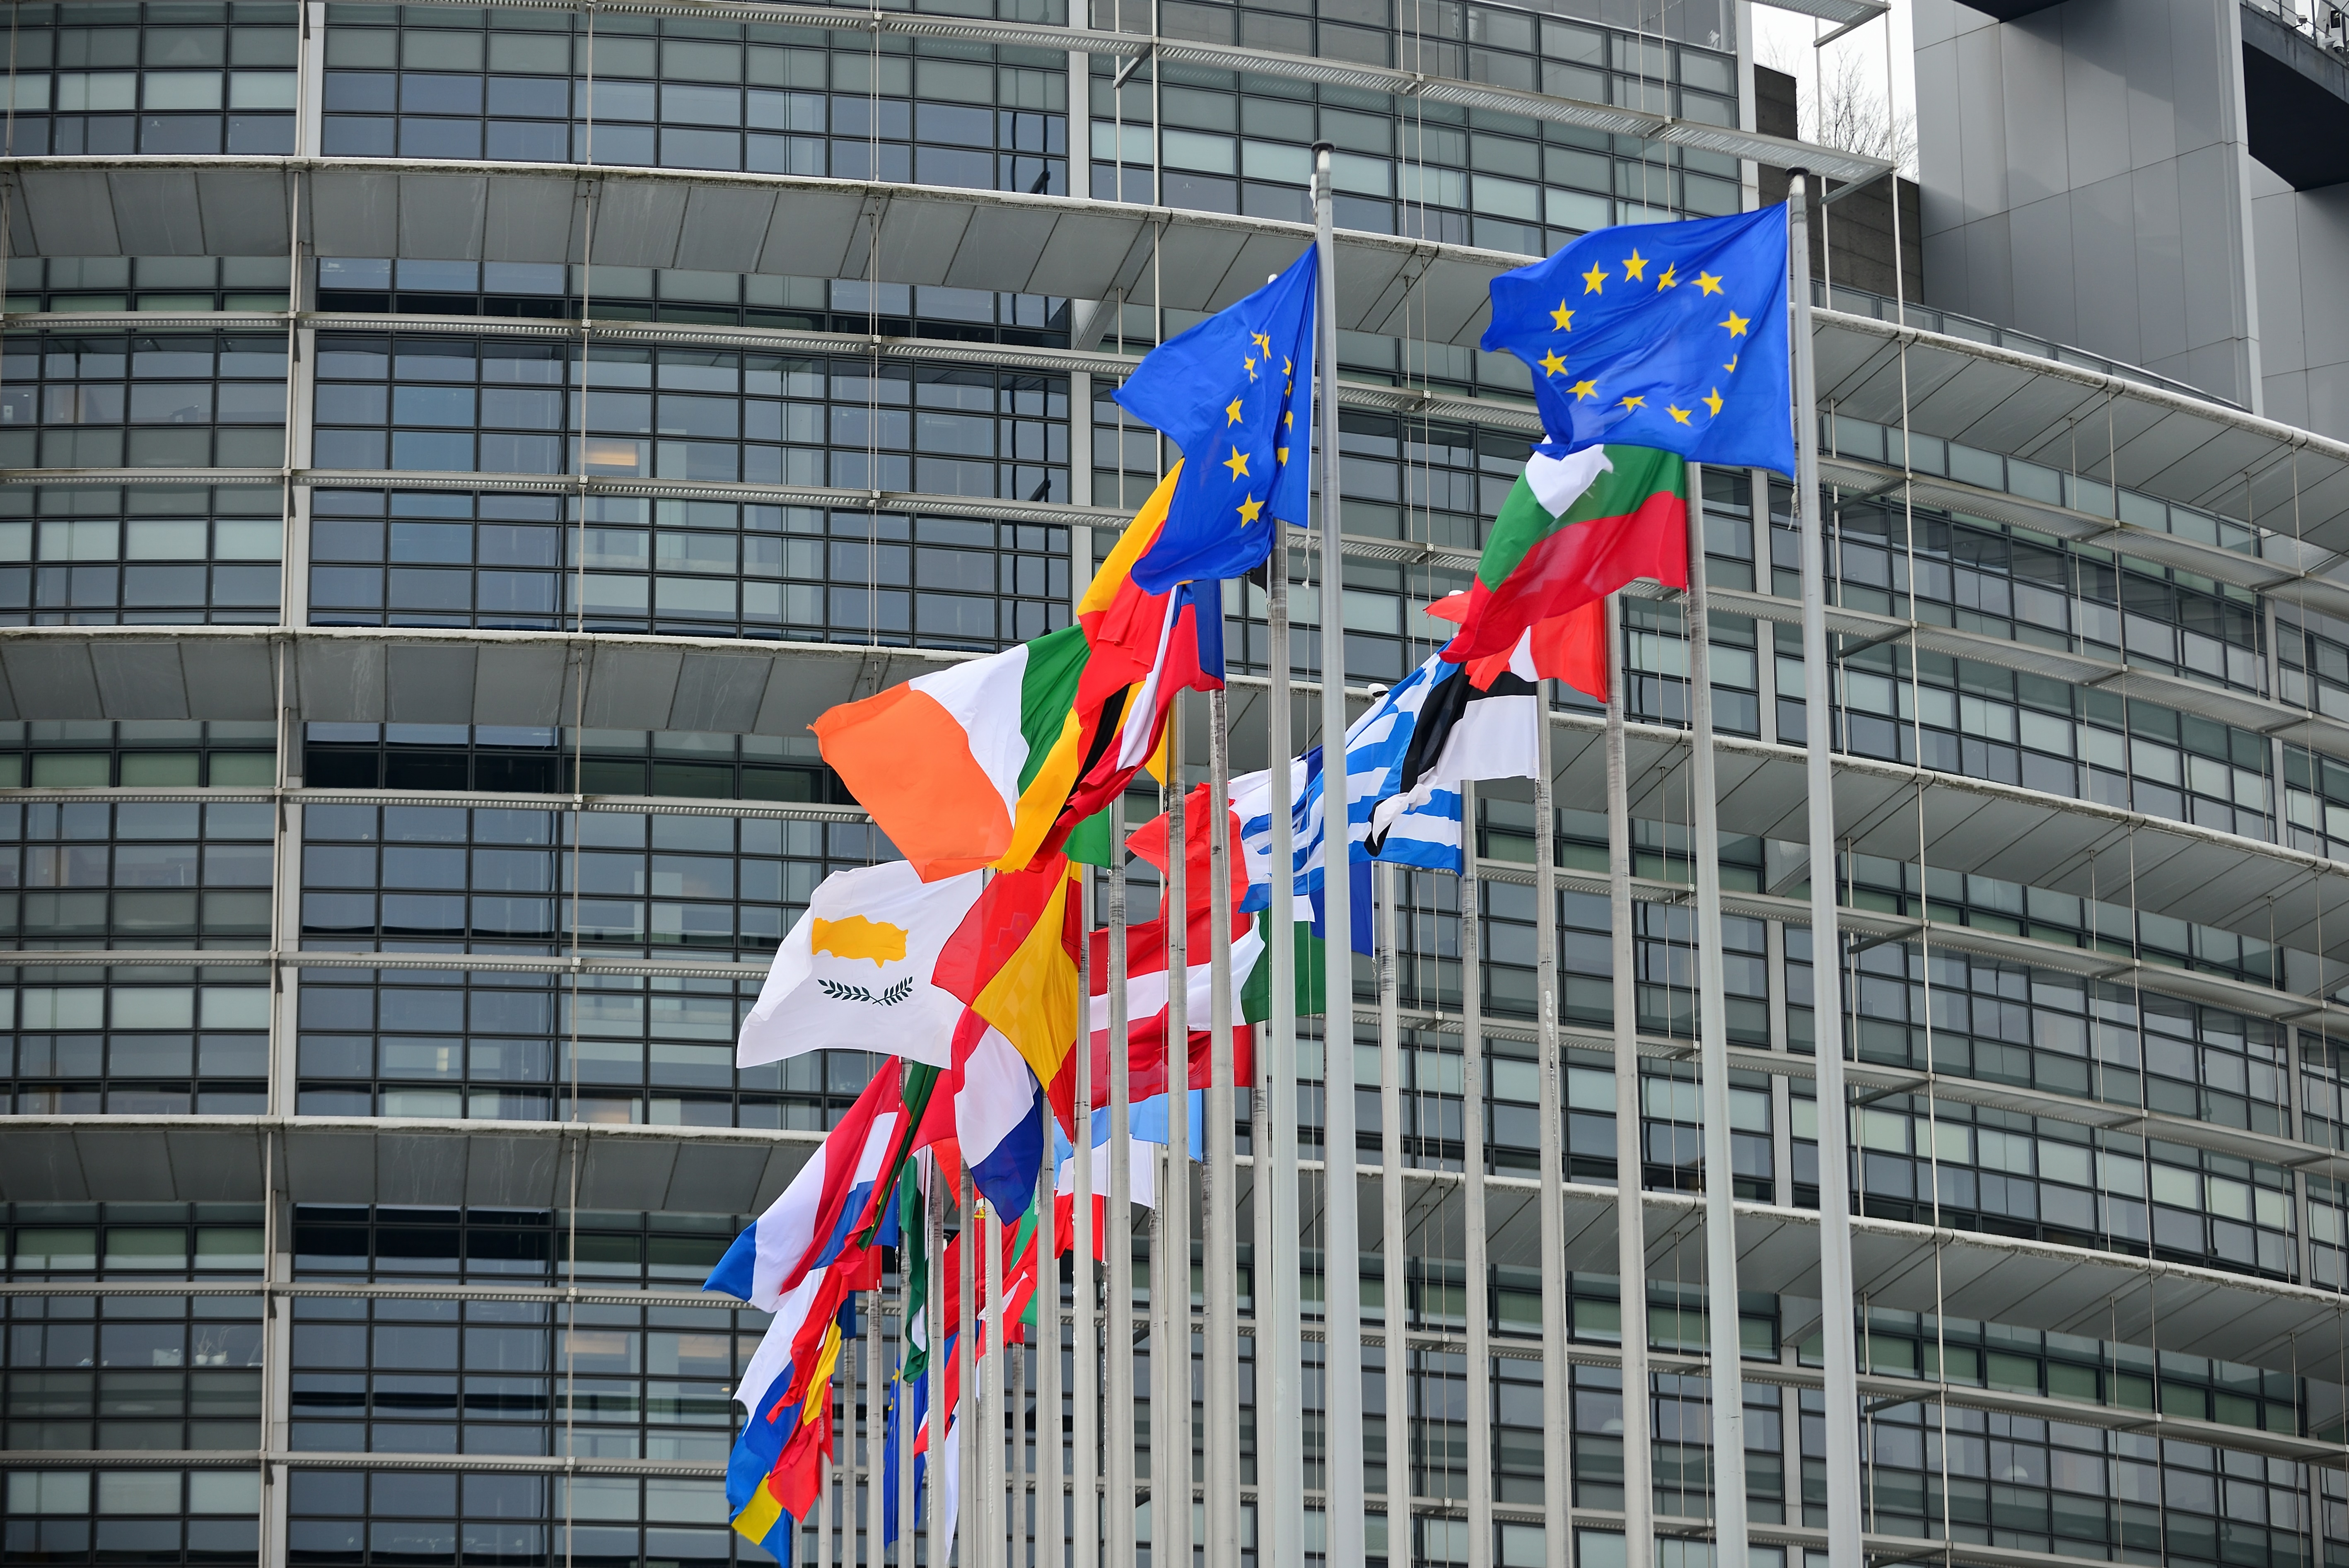 Flaggen der europäischen Mitgliedsstaaten vor dem Louise-Weiss Gebäude, dem Sitz des EU Parlaments im französischen Straßburg.